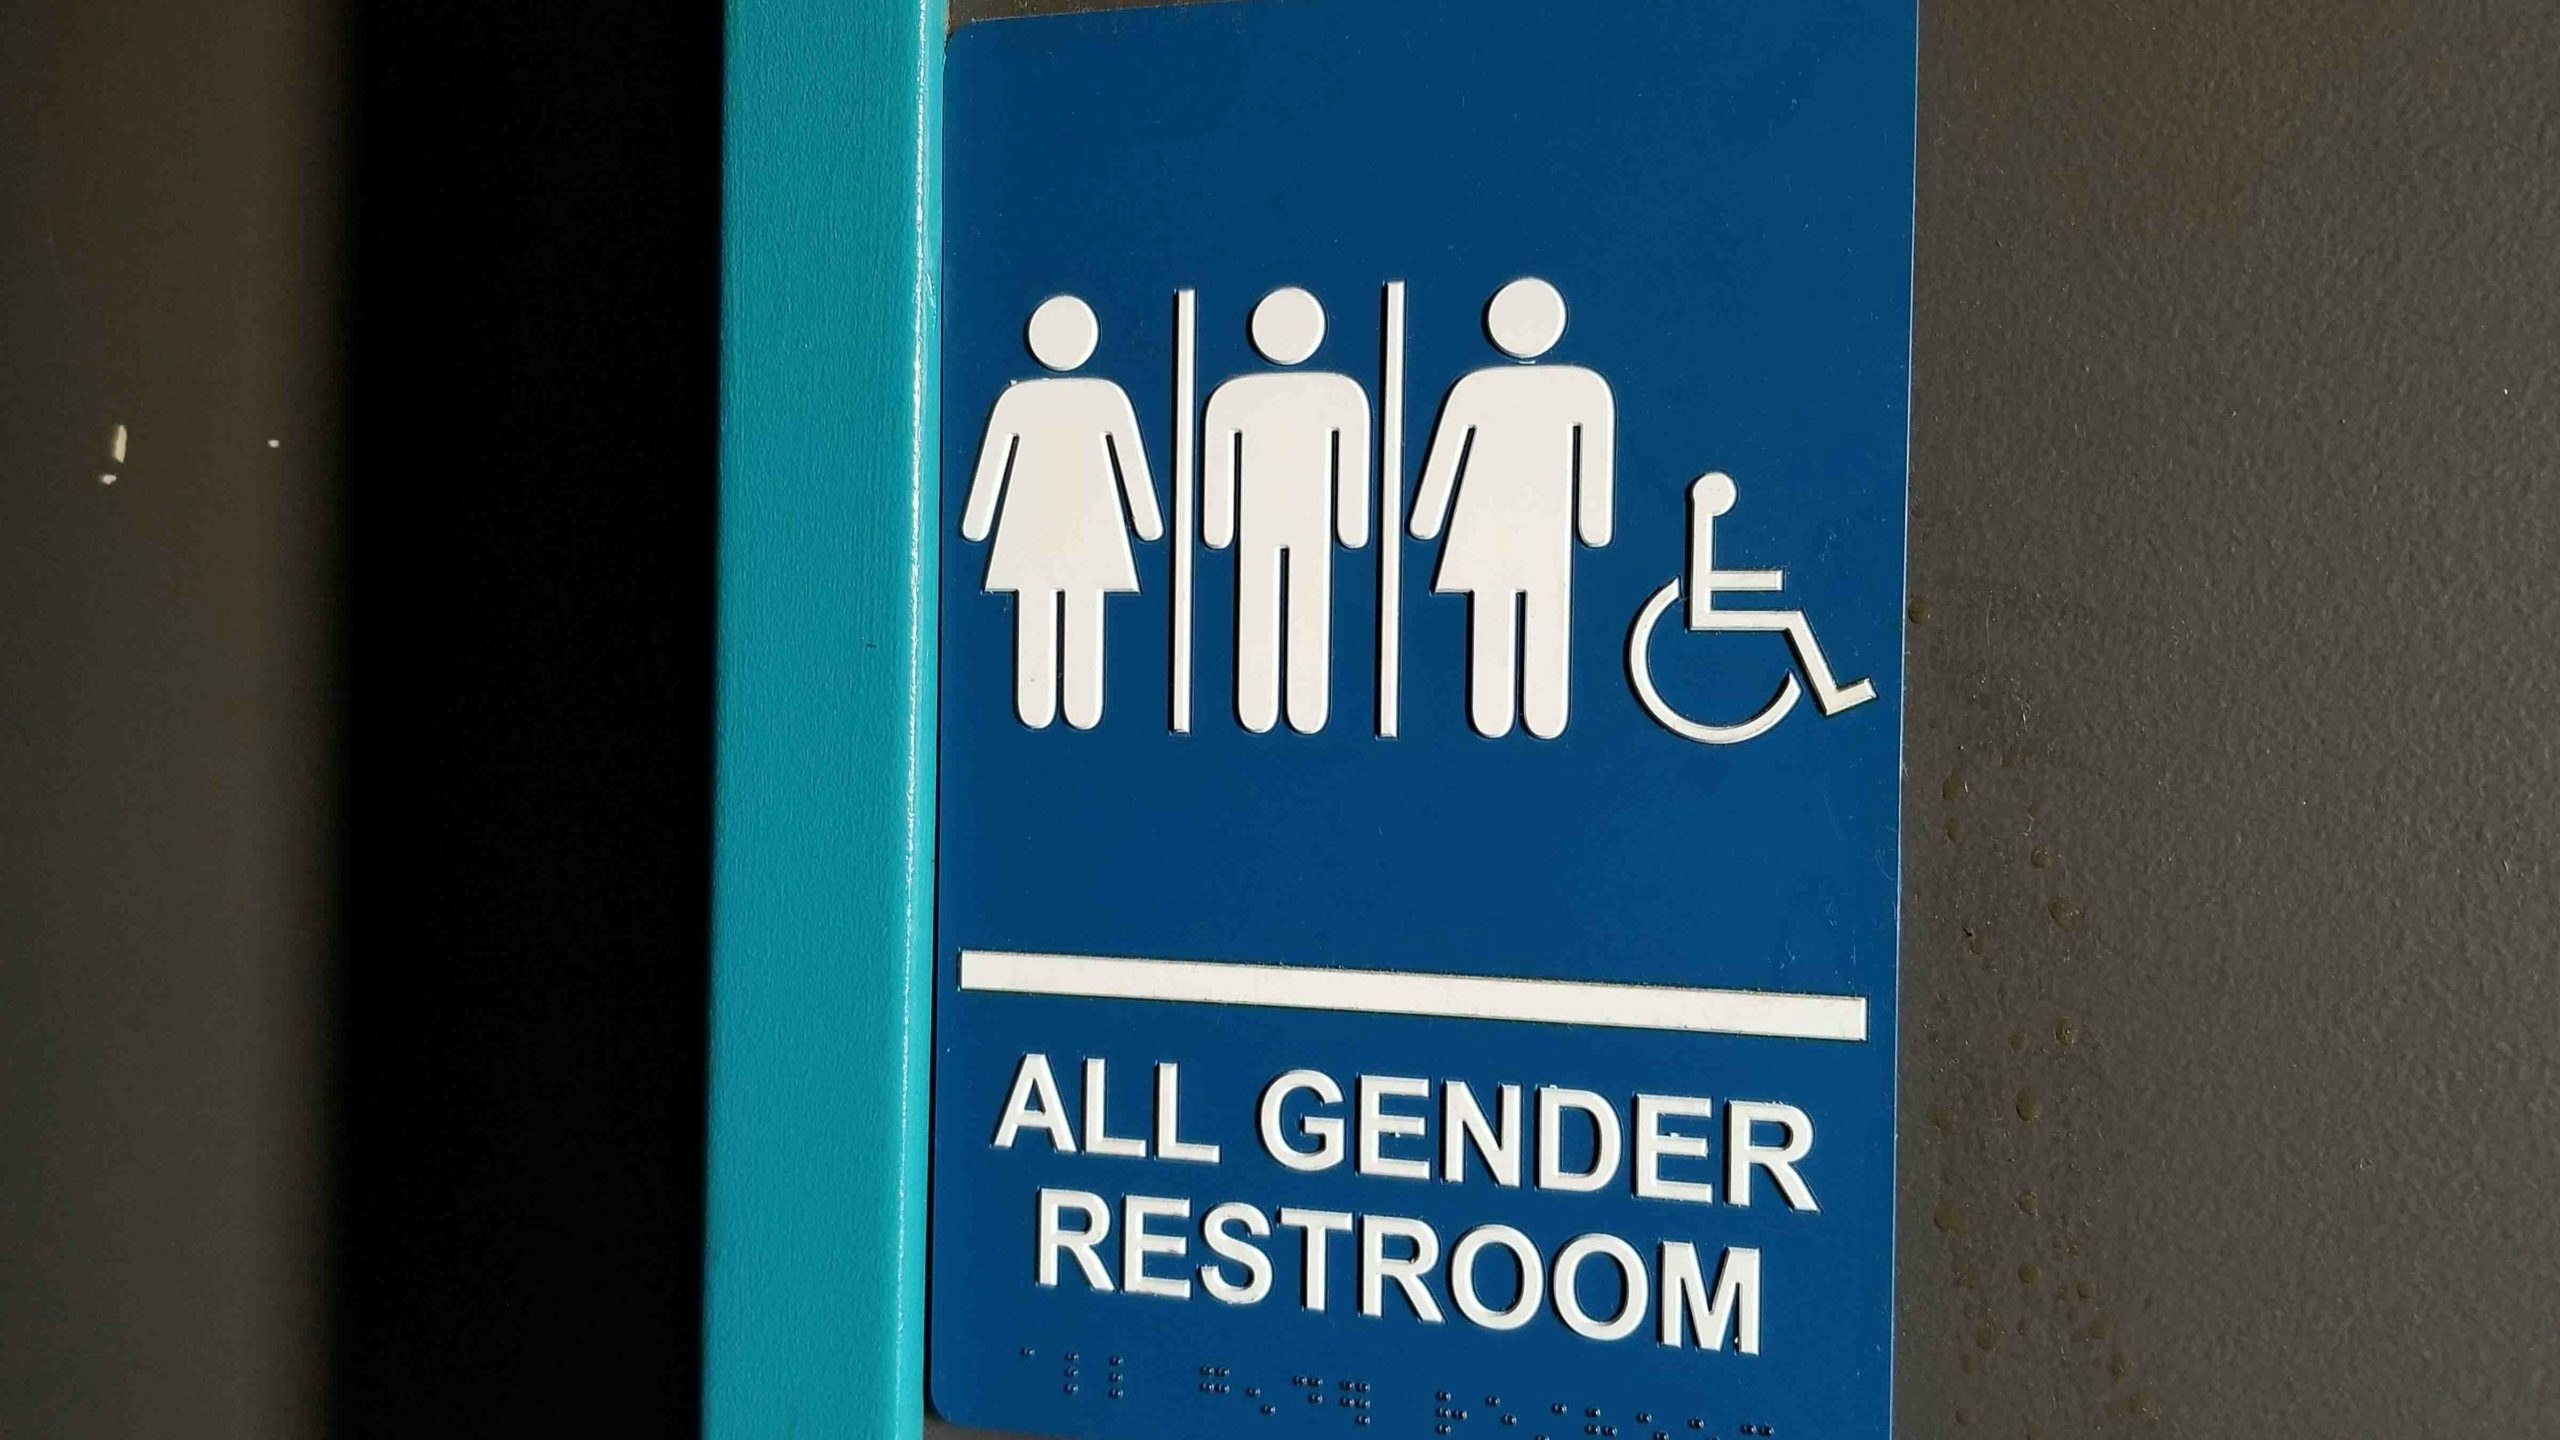 All gender restroom 6 2 22 scaled